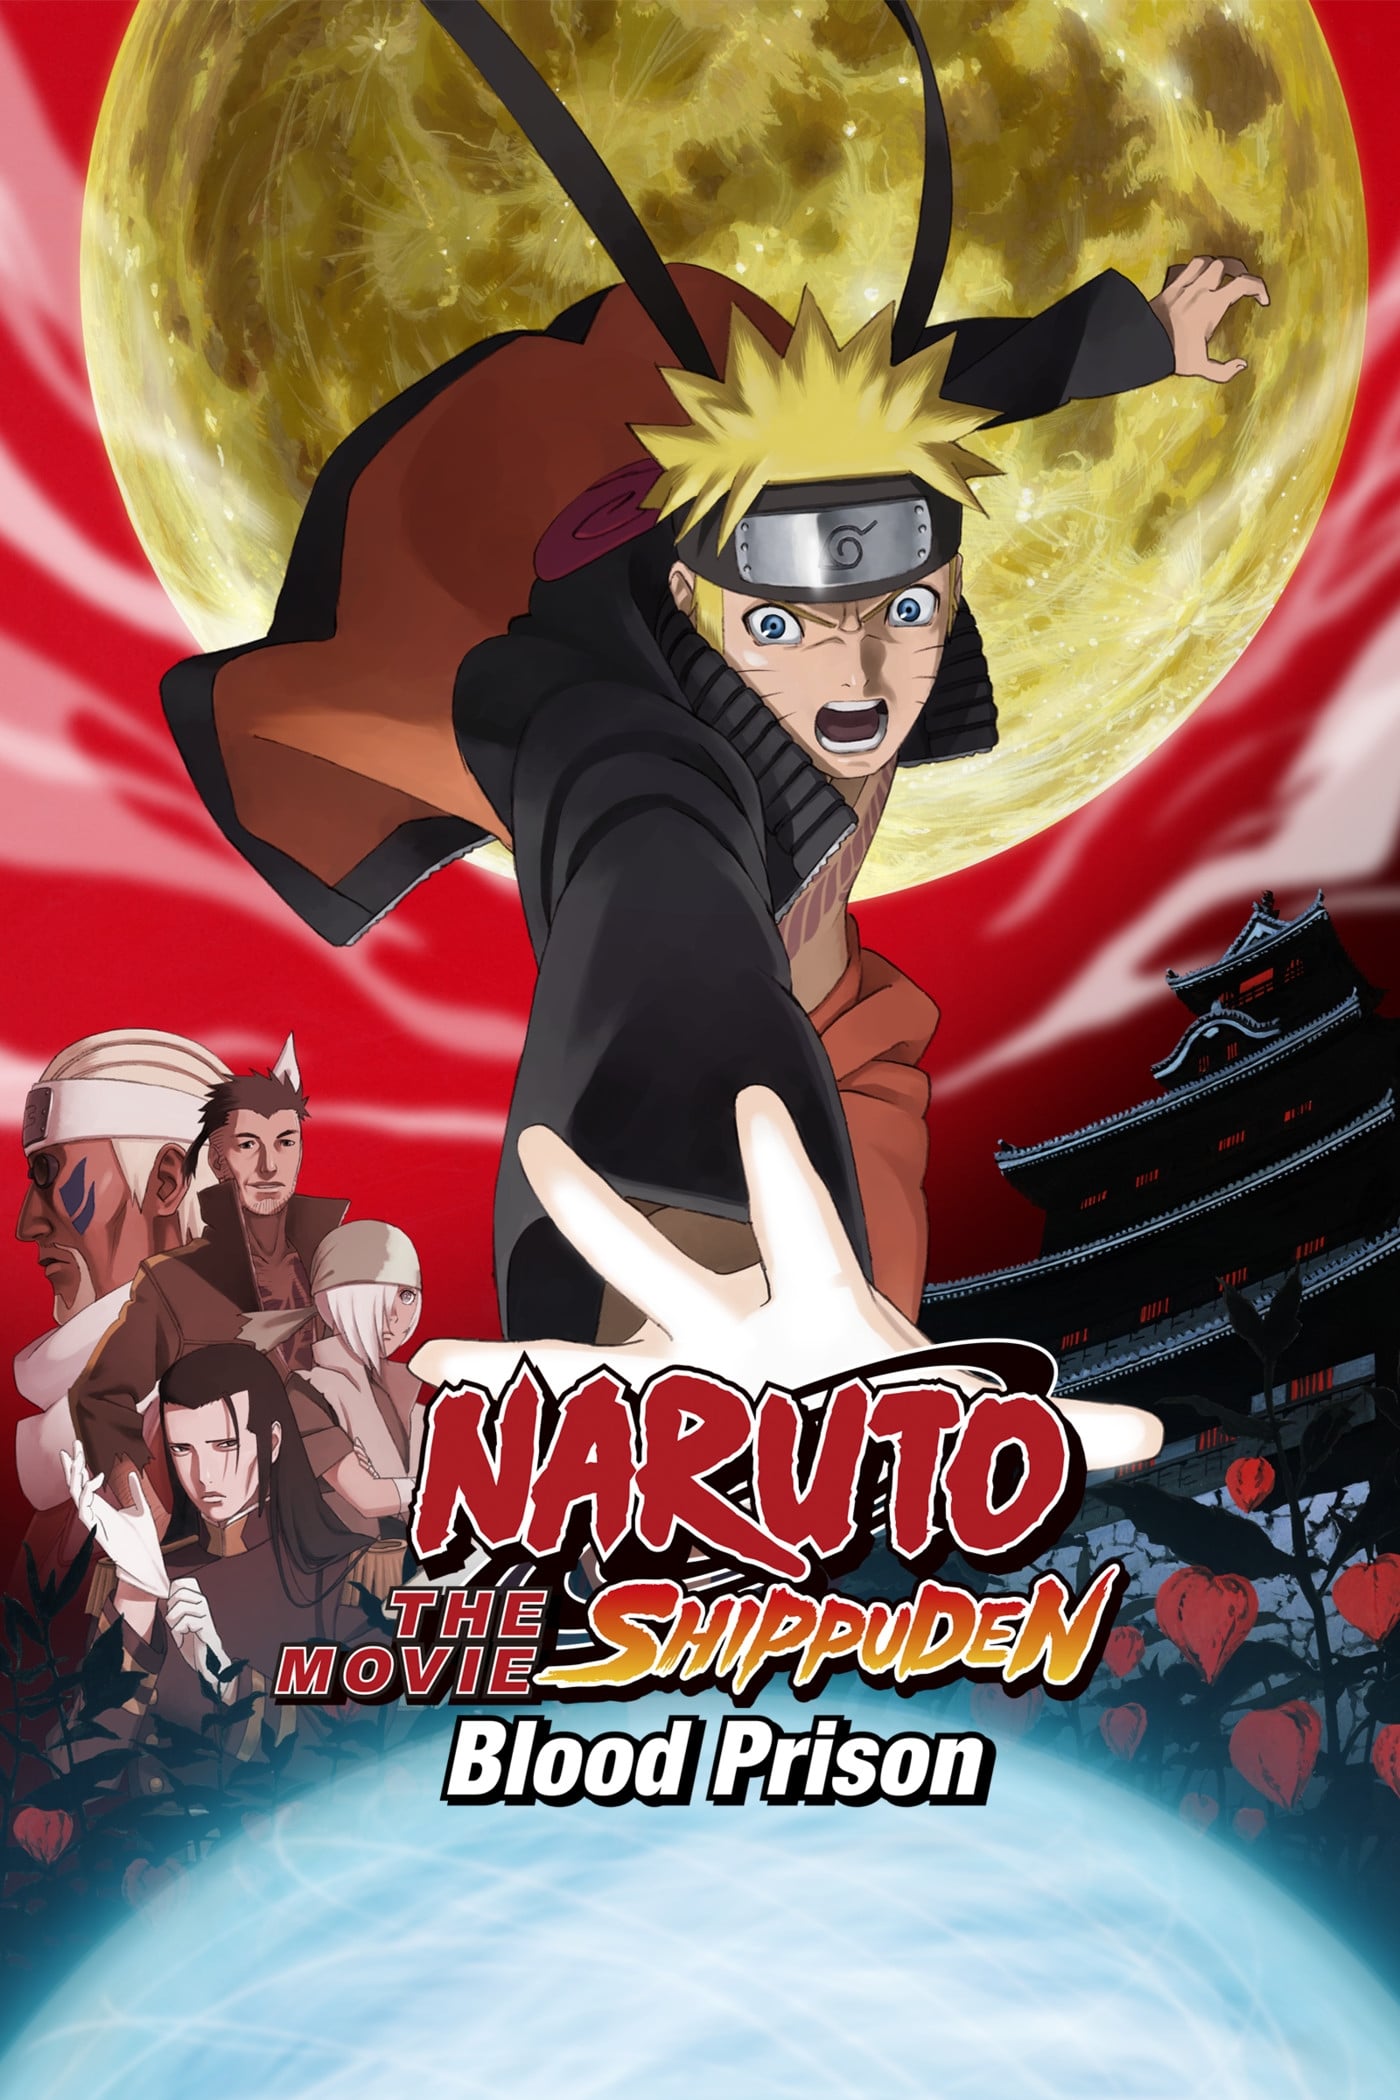 Naruto Shippuden 5: A Prisão de Sangue (2011)